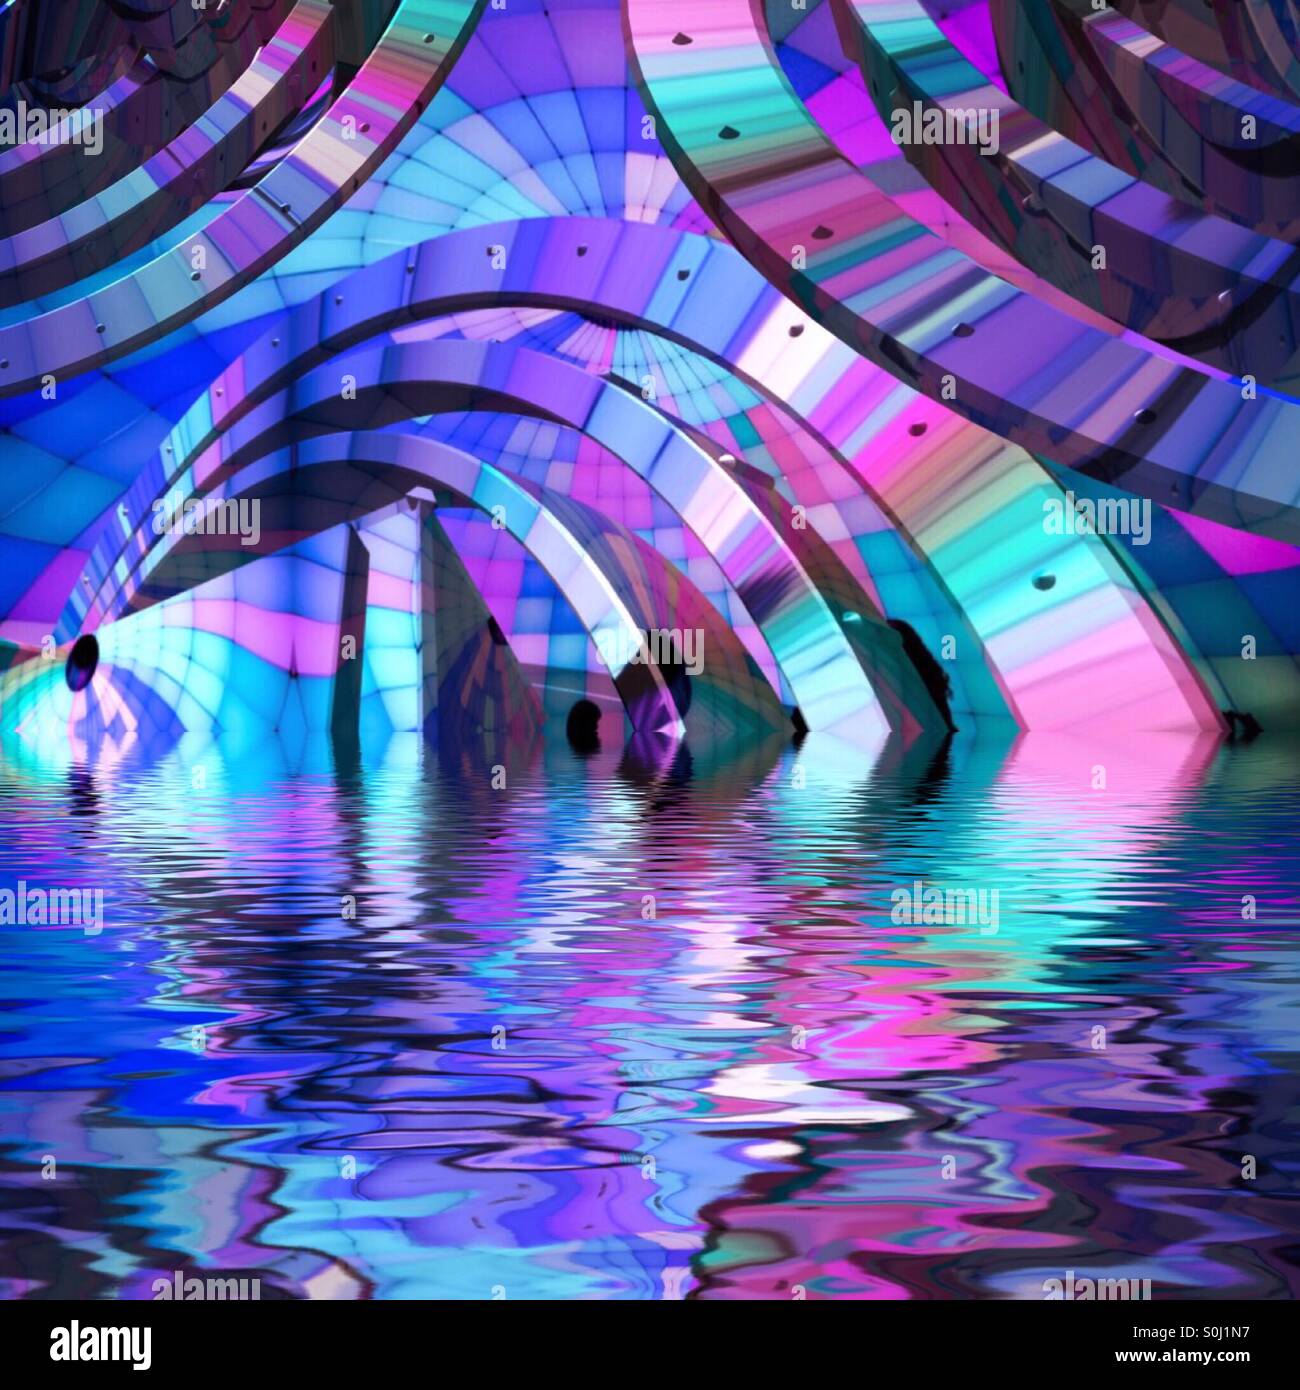 Ein abstraktes Bild von blau, rosa, lila und Aqua geschwungenen Formen im Wasser spiegelt. Stockfoto